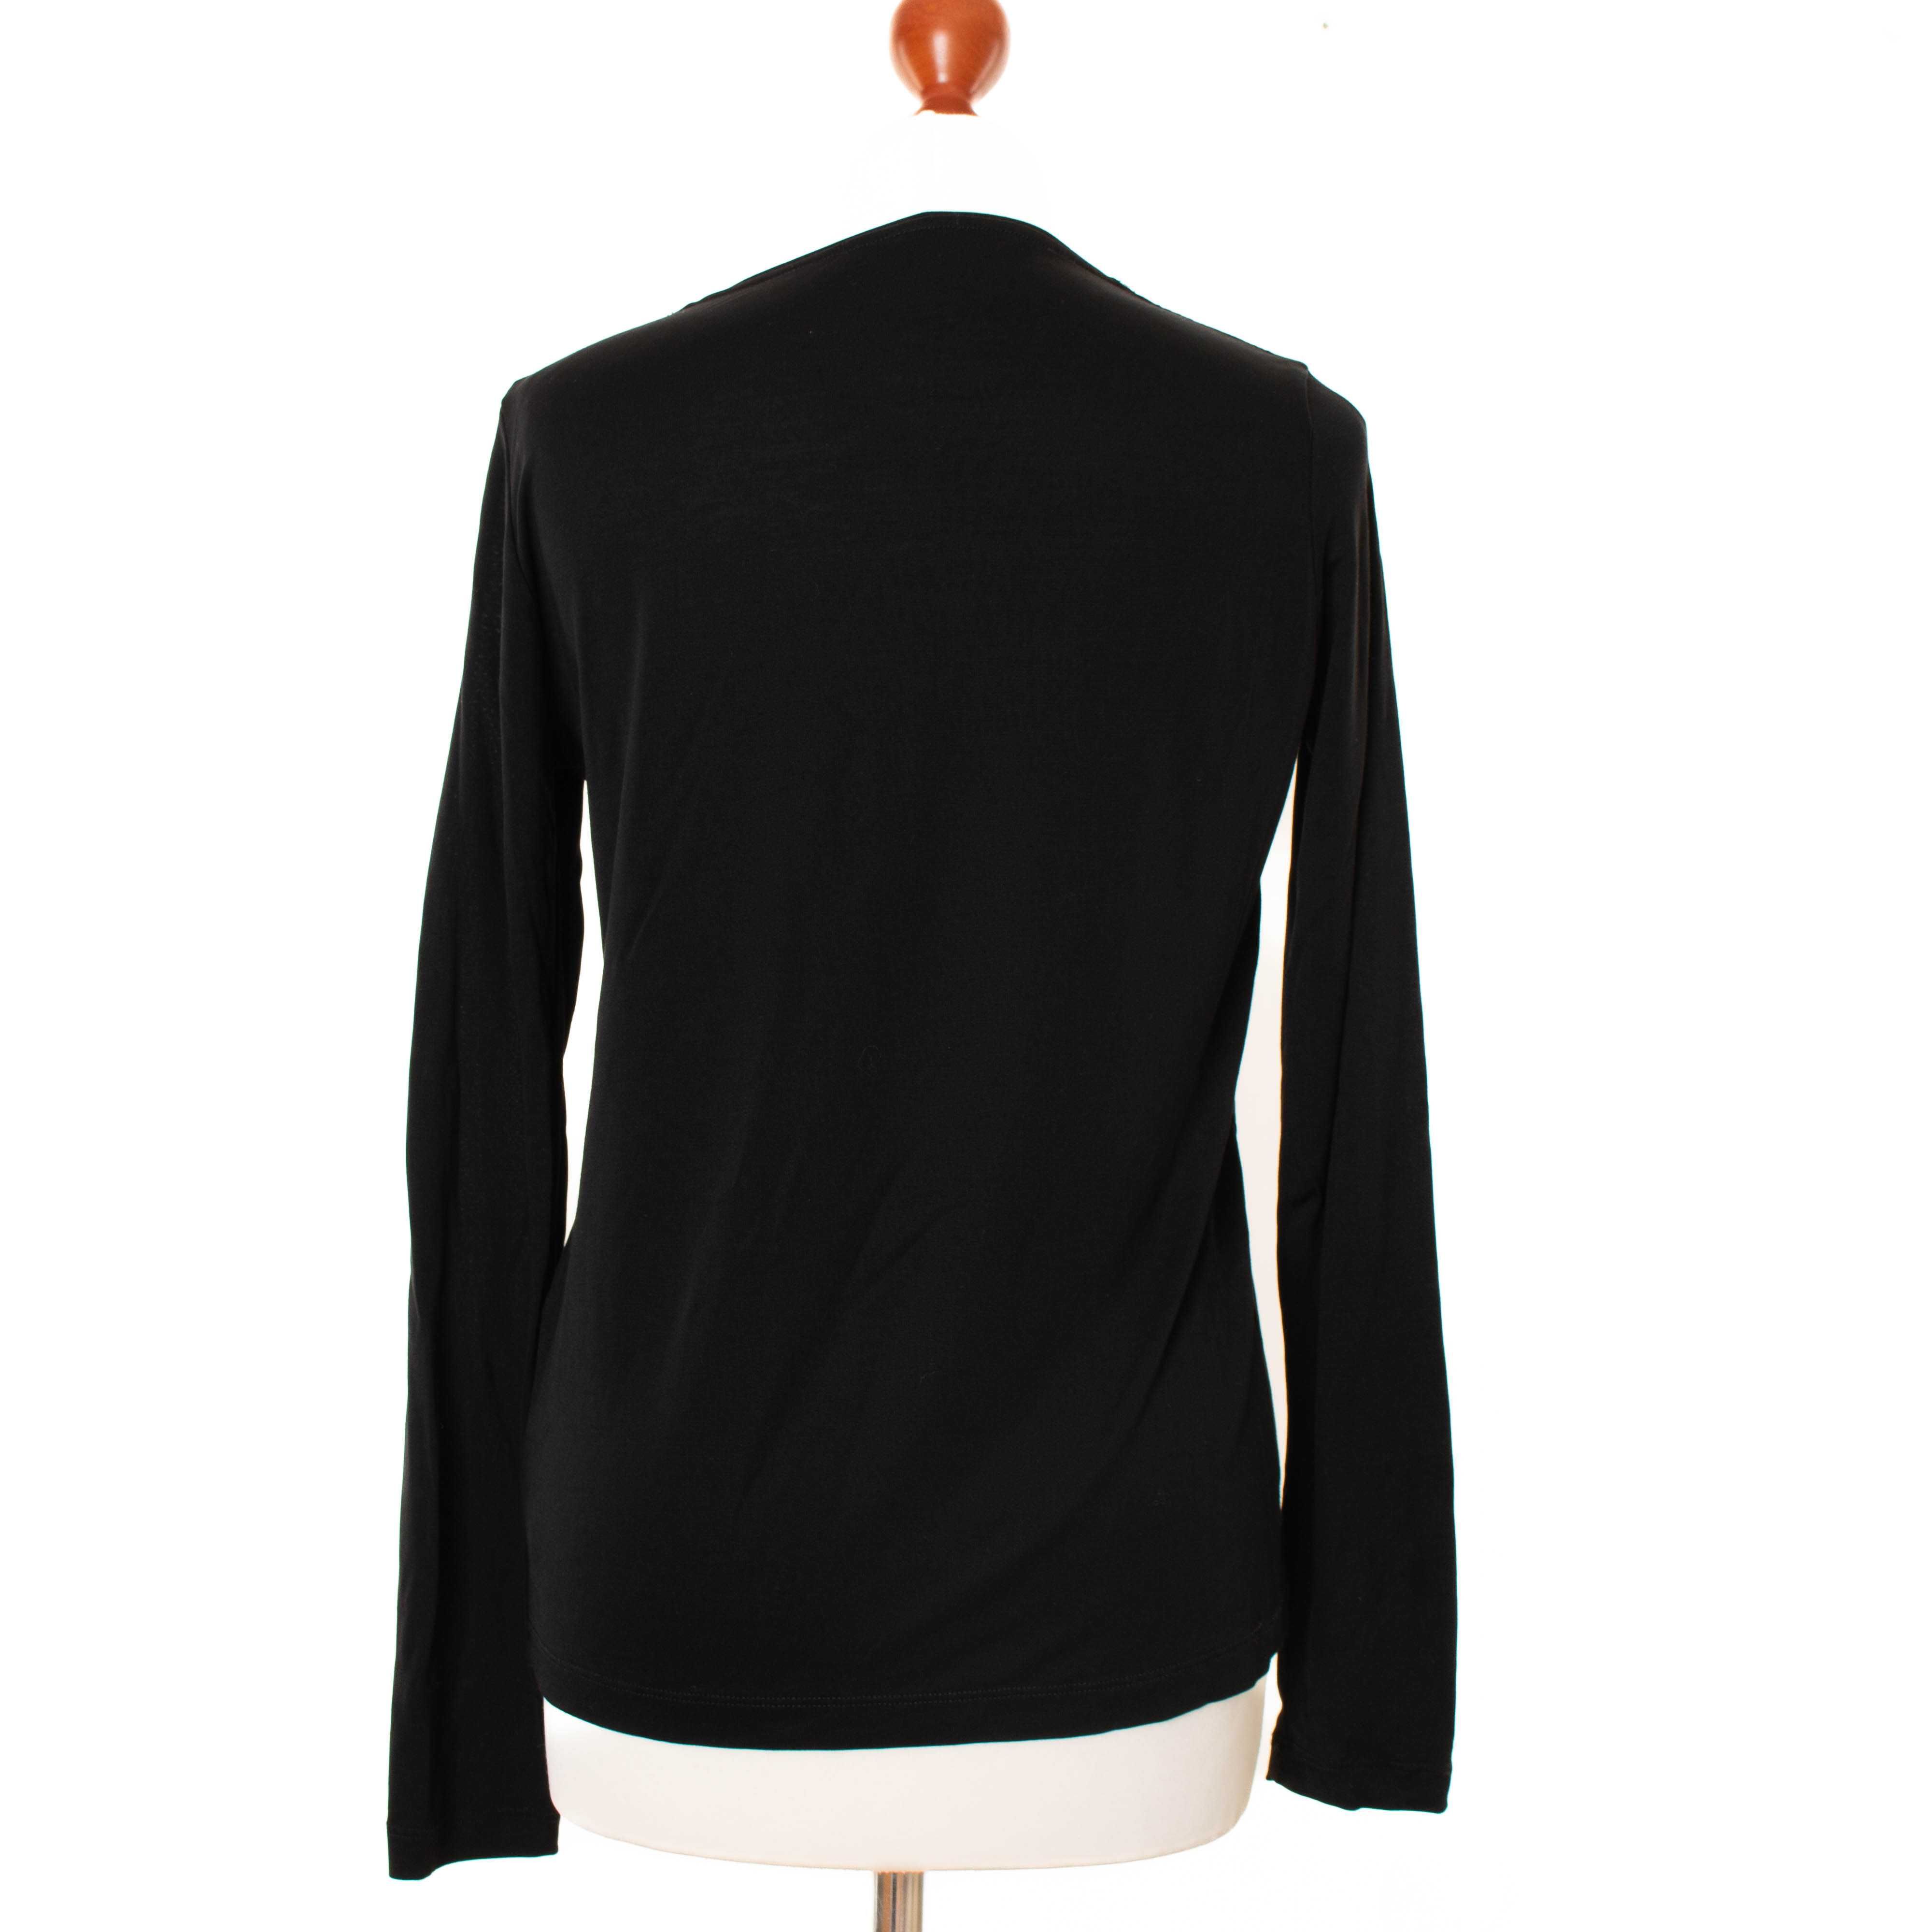 BURBERRY Дамска черна блуза с дълъг ръкав размер 44 / L